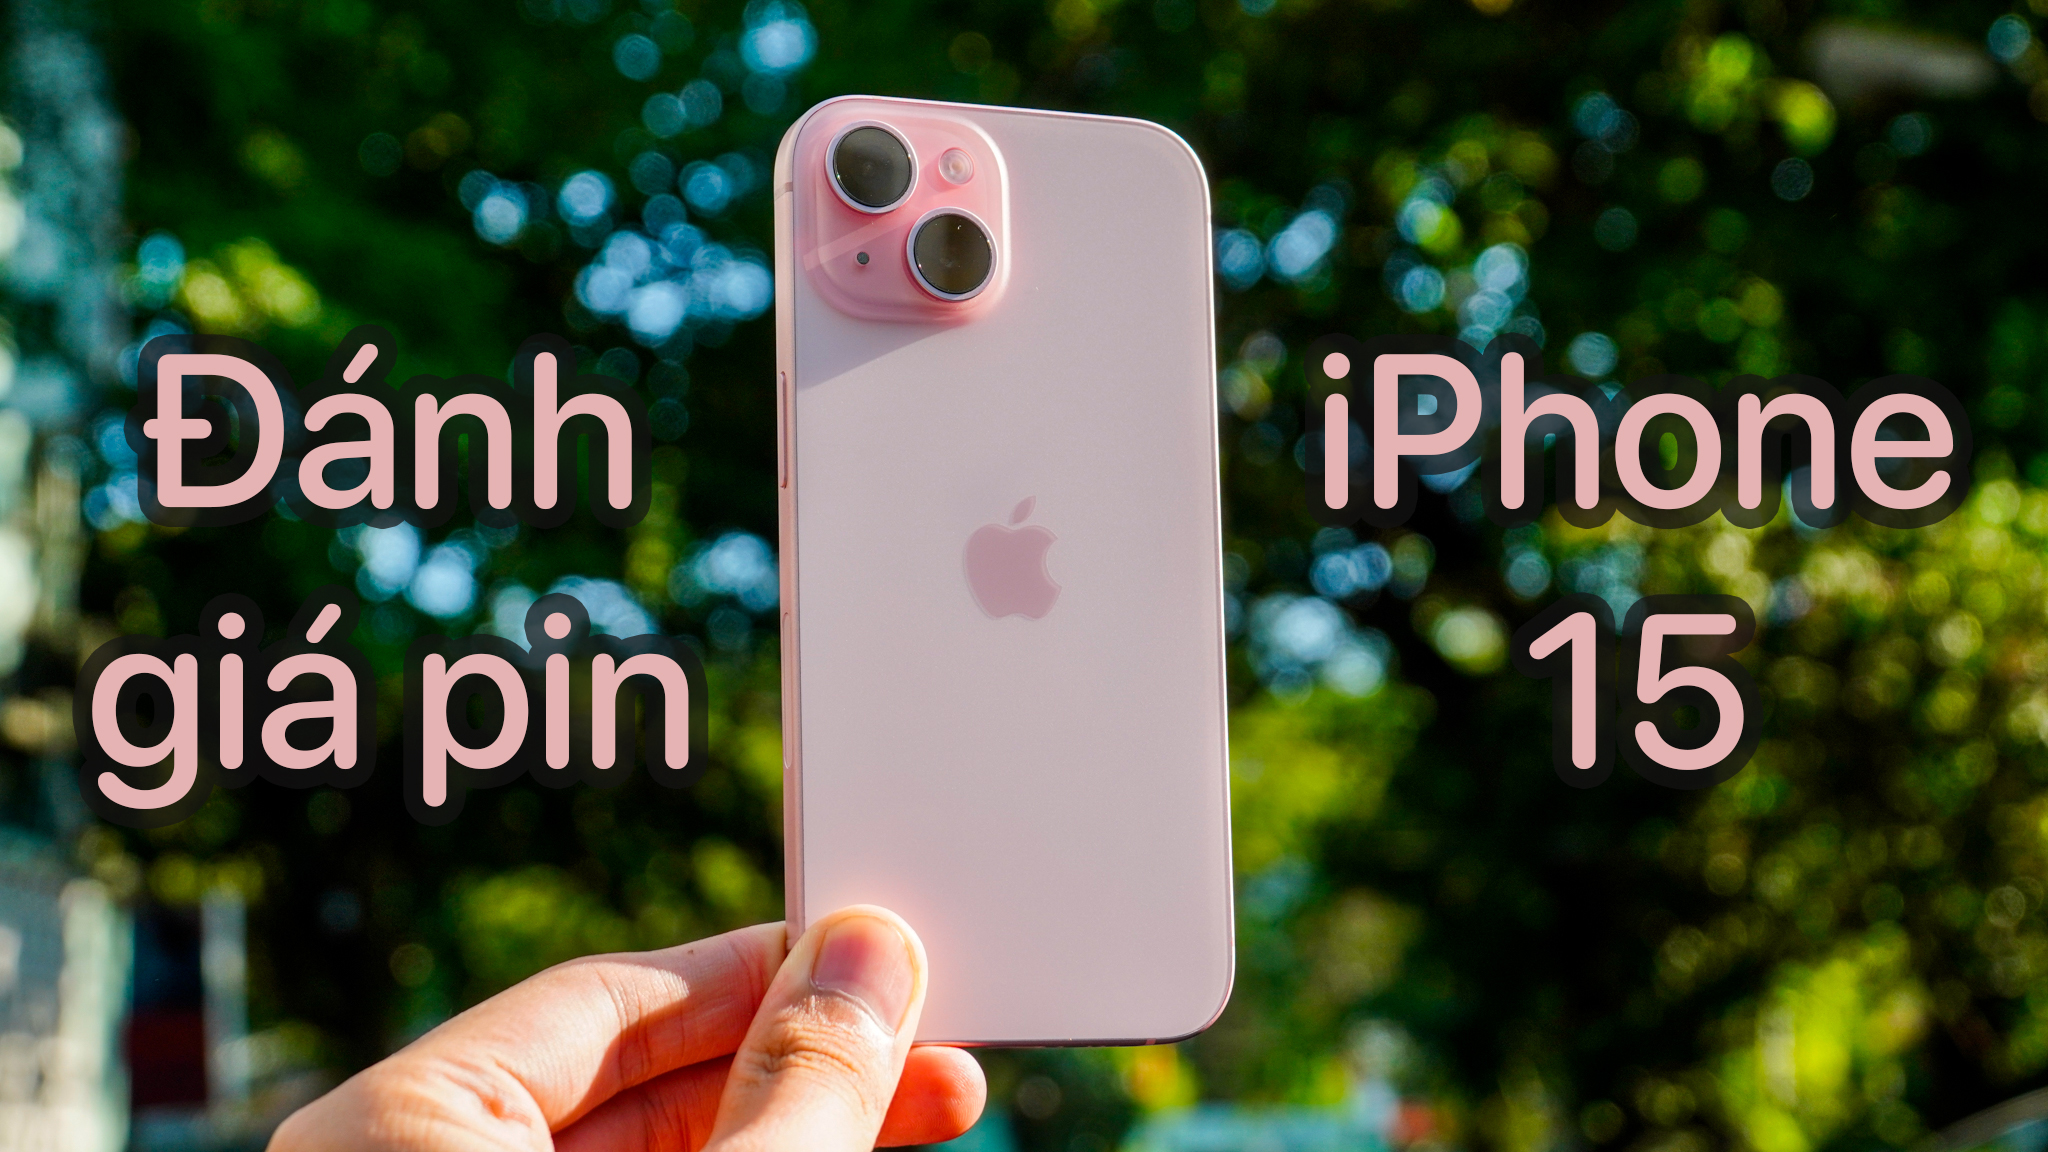 Đánh giá pin iPhone 15: Hoạt động liên tục gần 9 tiếng, thời gian sạc hơn 2 tiếng